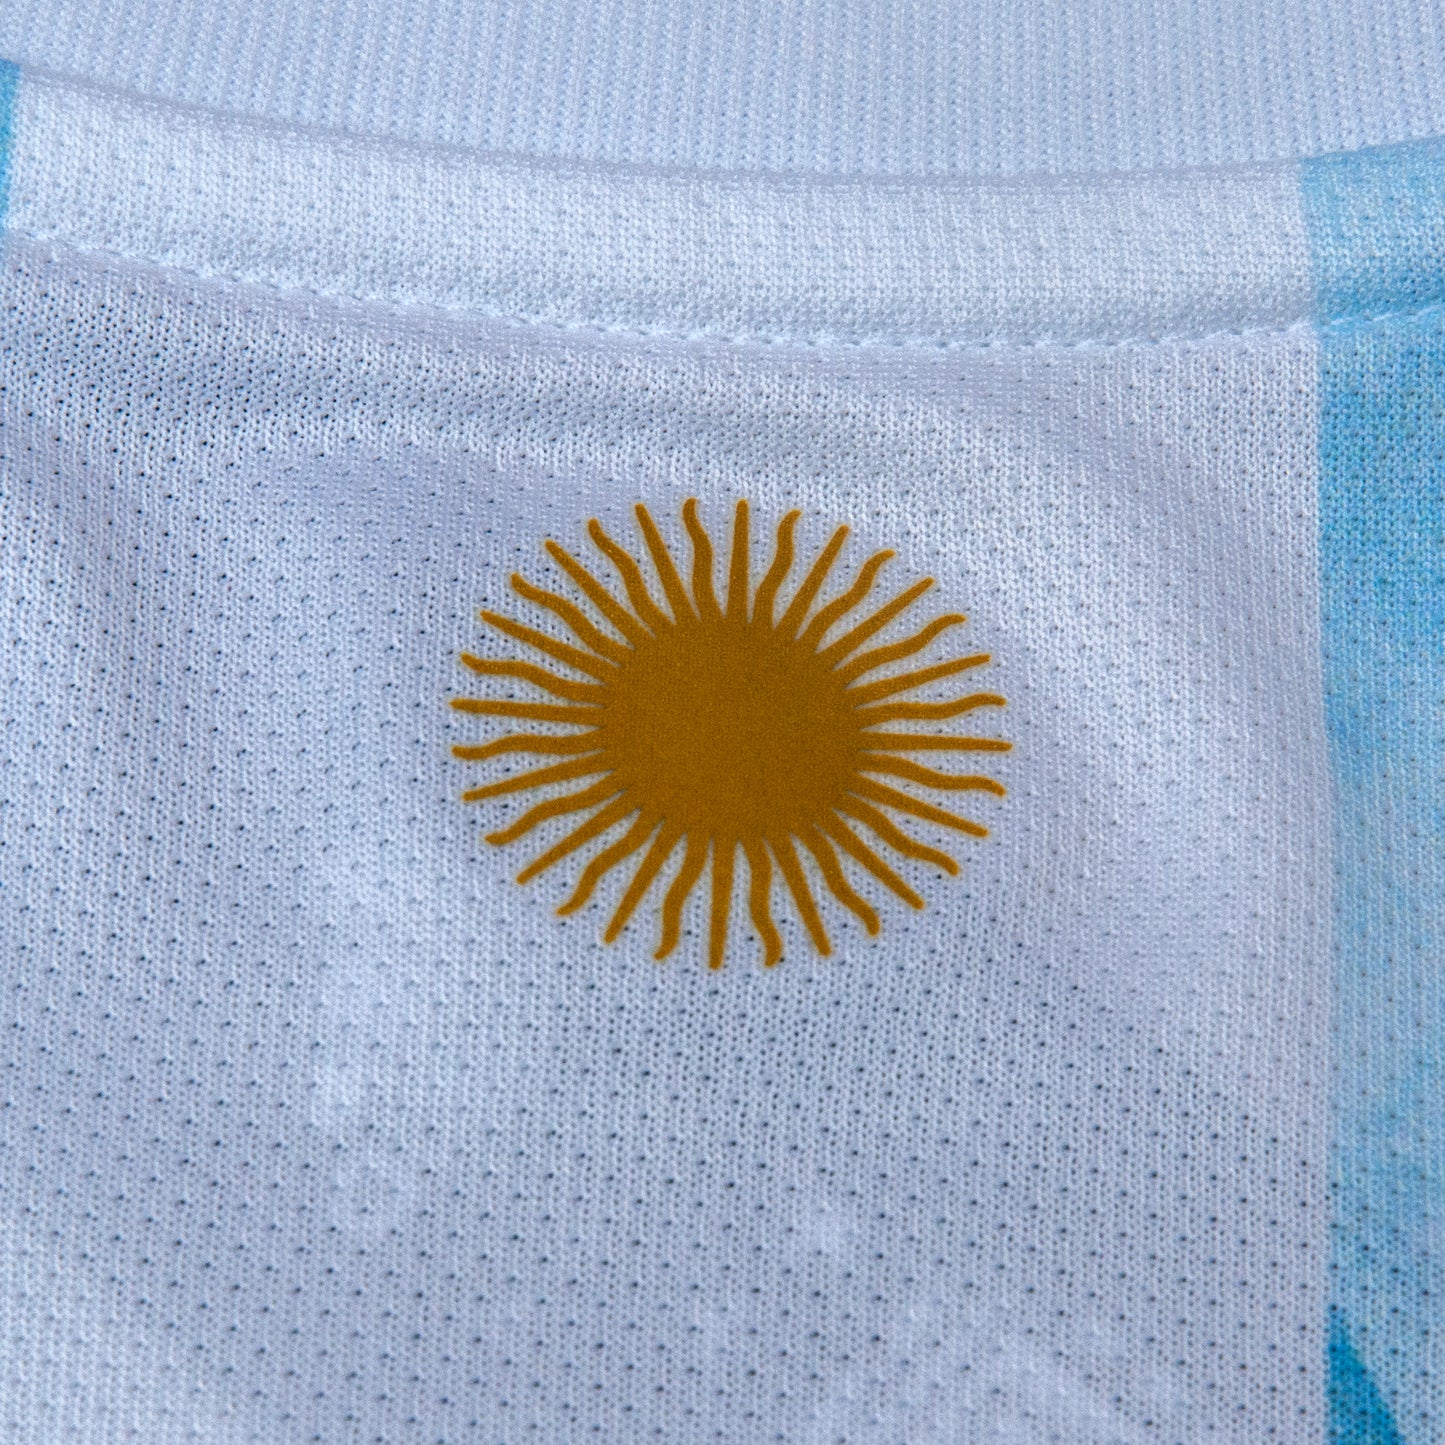 Argentina 2021 Local